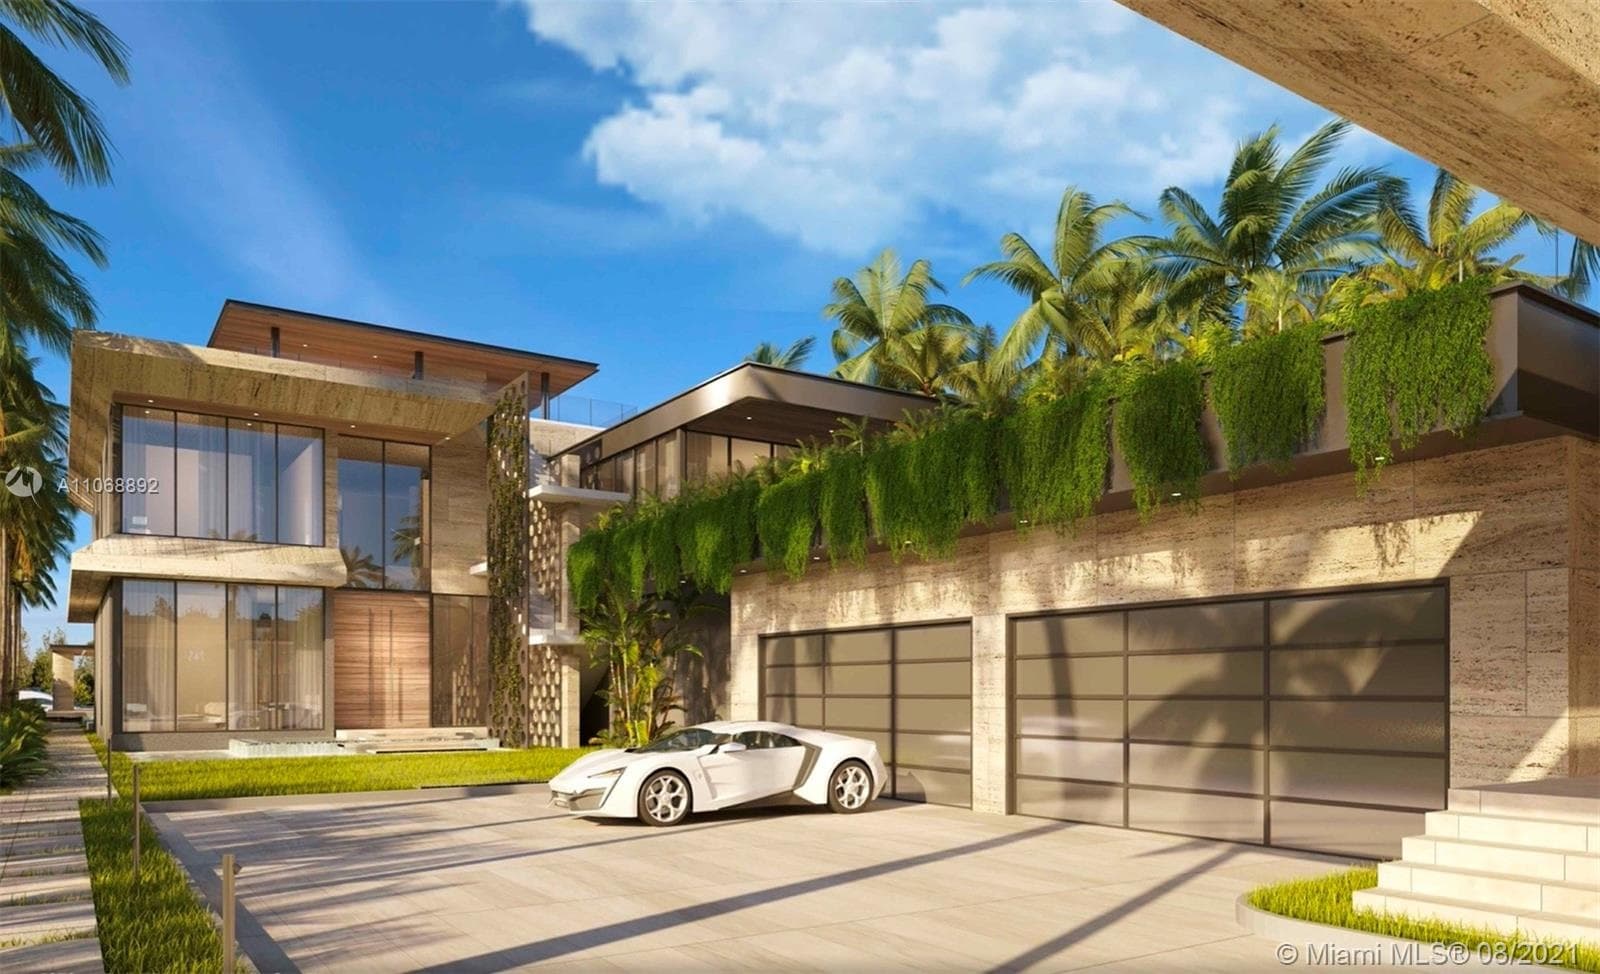   Bedroom Villa For Sale Miami Beach Lp09785 A4501e827b6e200.jpg